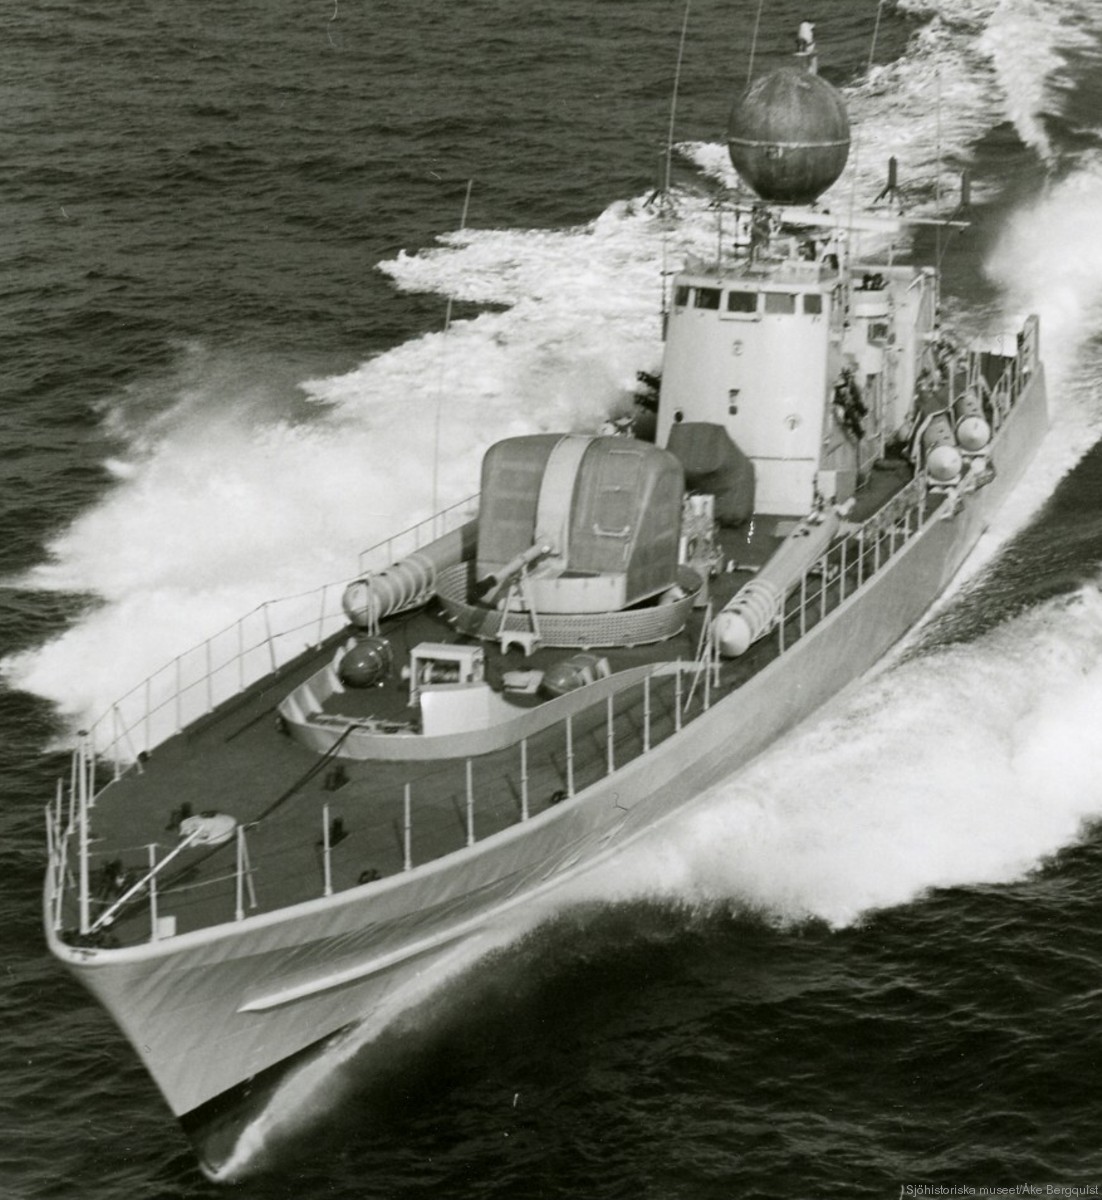 t124 castor hswms hms spica class fast attack craft torpedo boat vessel swedish navy svenska marinen 07